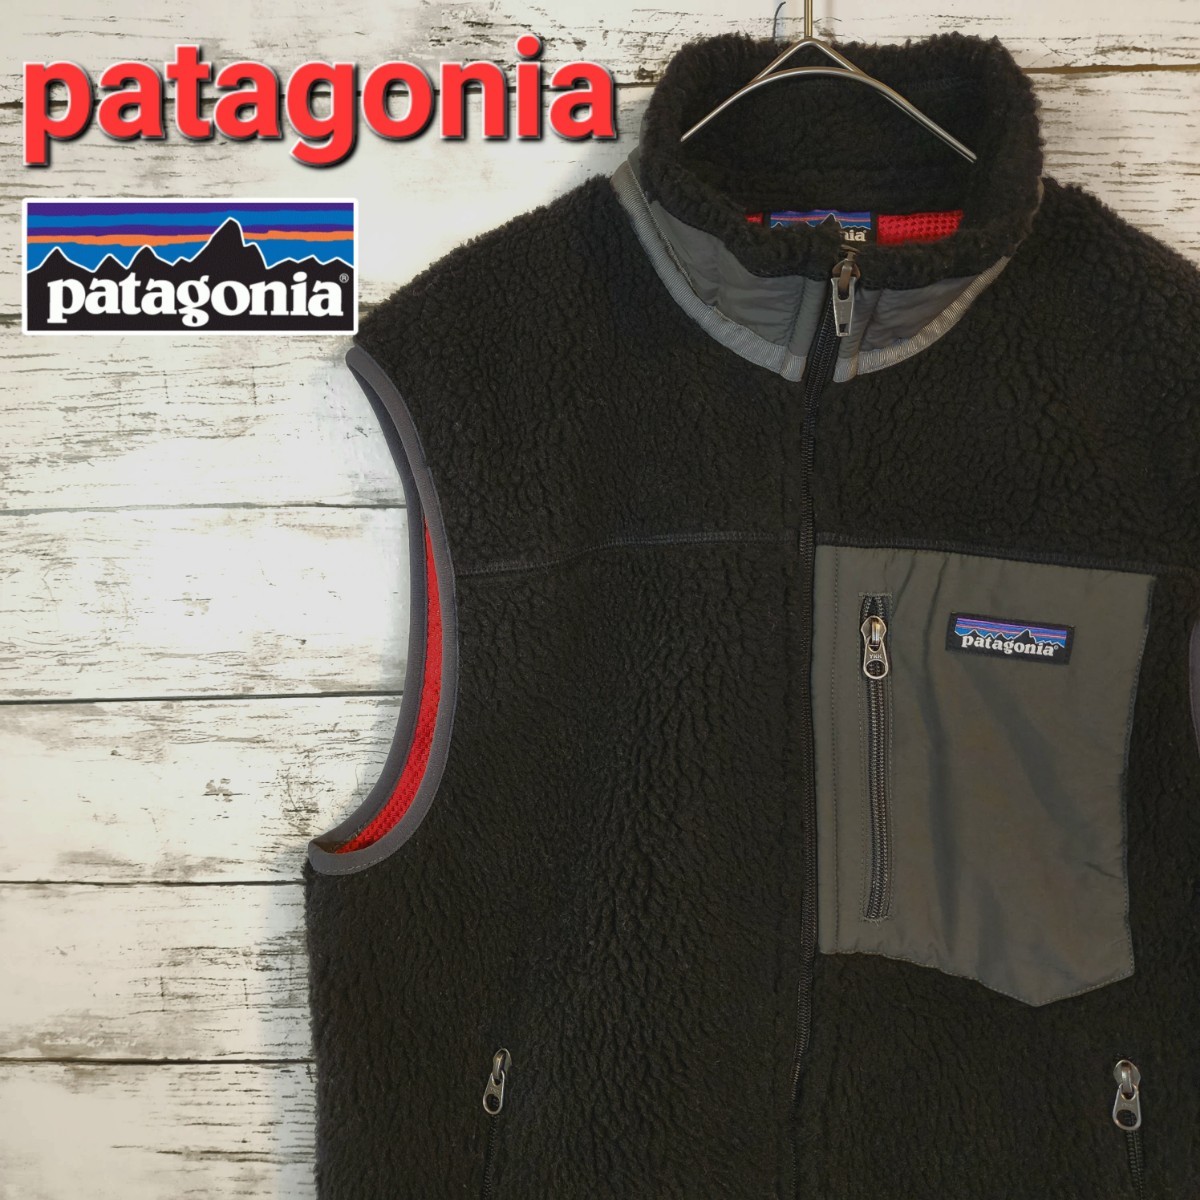 新作モデル フリース エックス レトロXベスト 【patagonia】パタゴニア